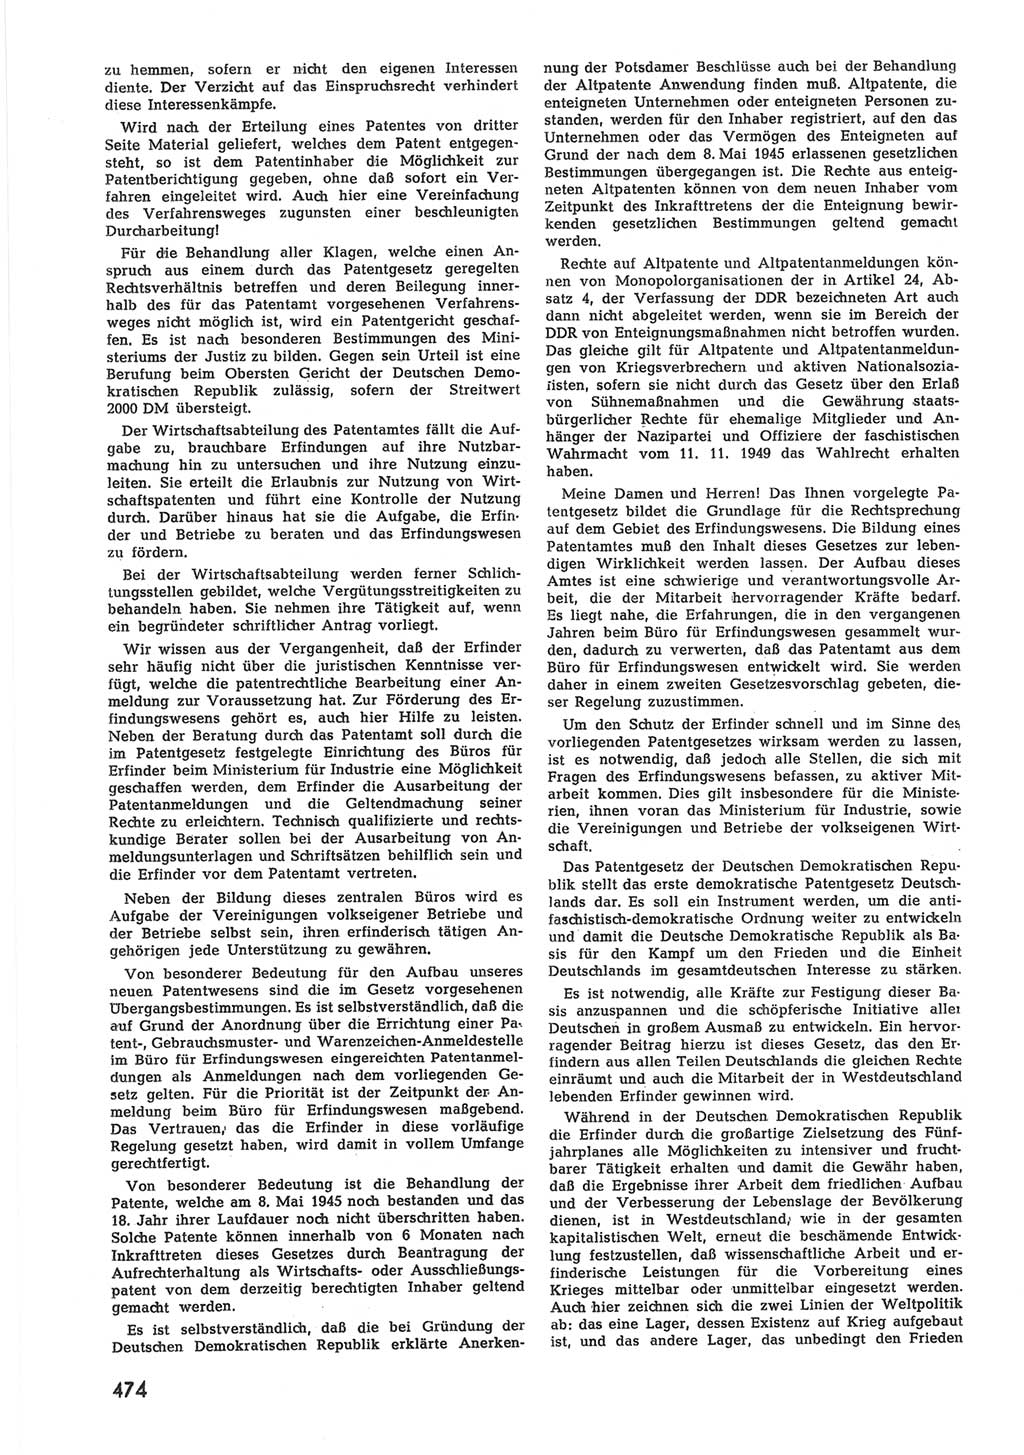 Provisorische Volkskammer (VK) der Deutschen Demokratischen Republik (DDR) 1949-1950, Dokument 492 (Prov. VK DDR 1949-1950, Dok. 492)